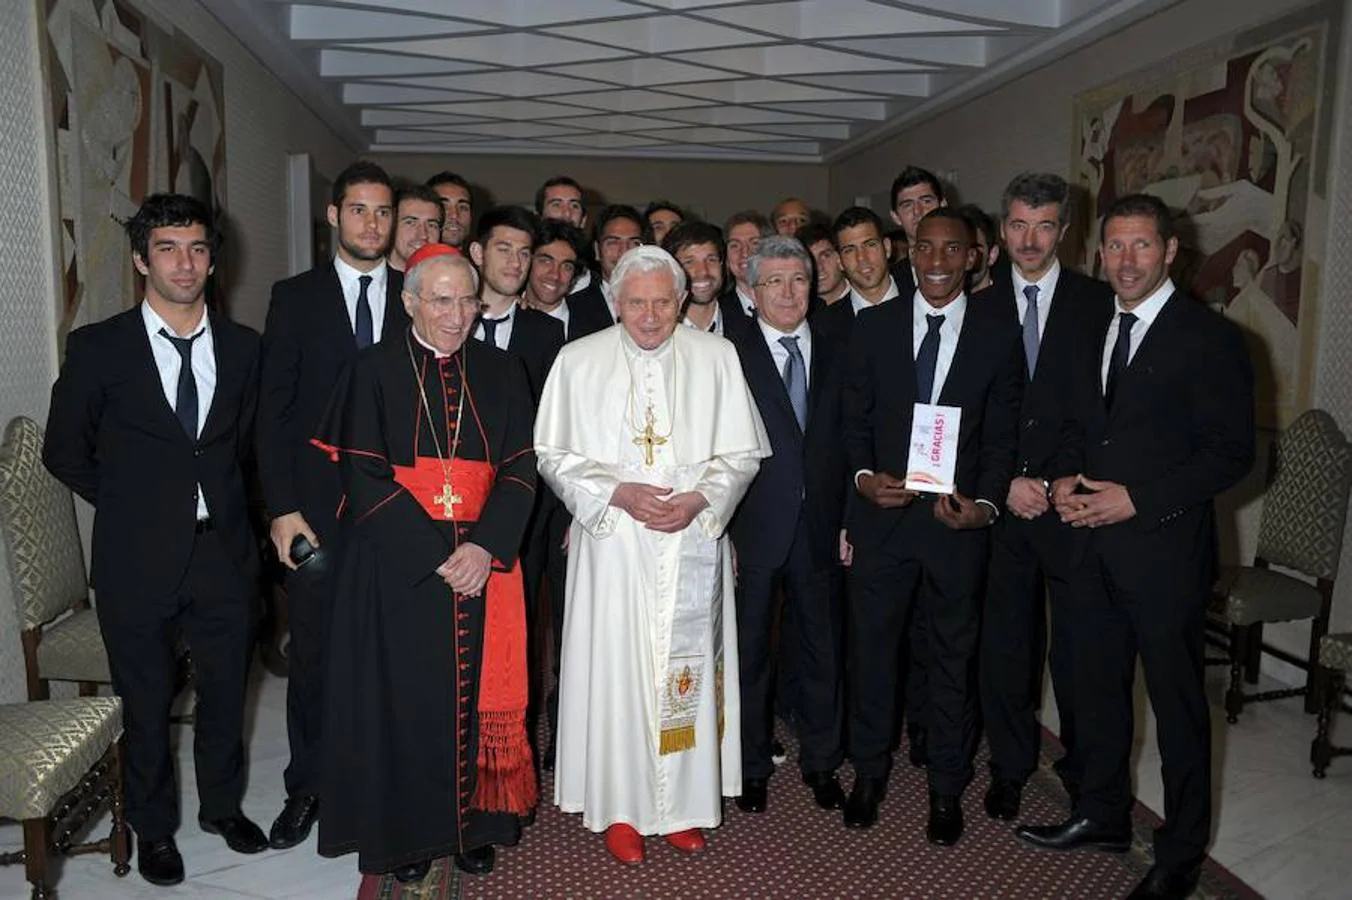 Fotografía facilitada por el club Atlético de Madrid del encuentro privado que mantuvo el Papa Benedicto XVI con los jugadores y la directiva del Atlético de Madrid tras la audiencia papal en la que estuvieron presentes